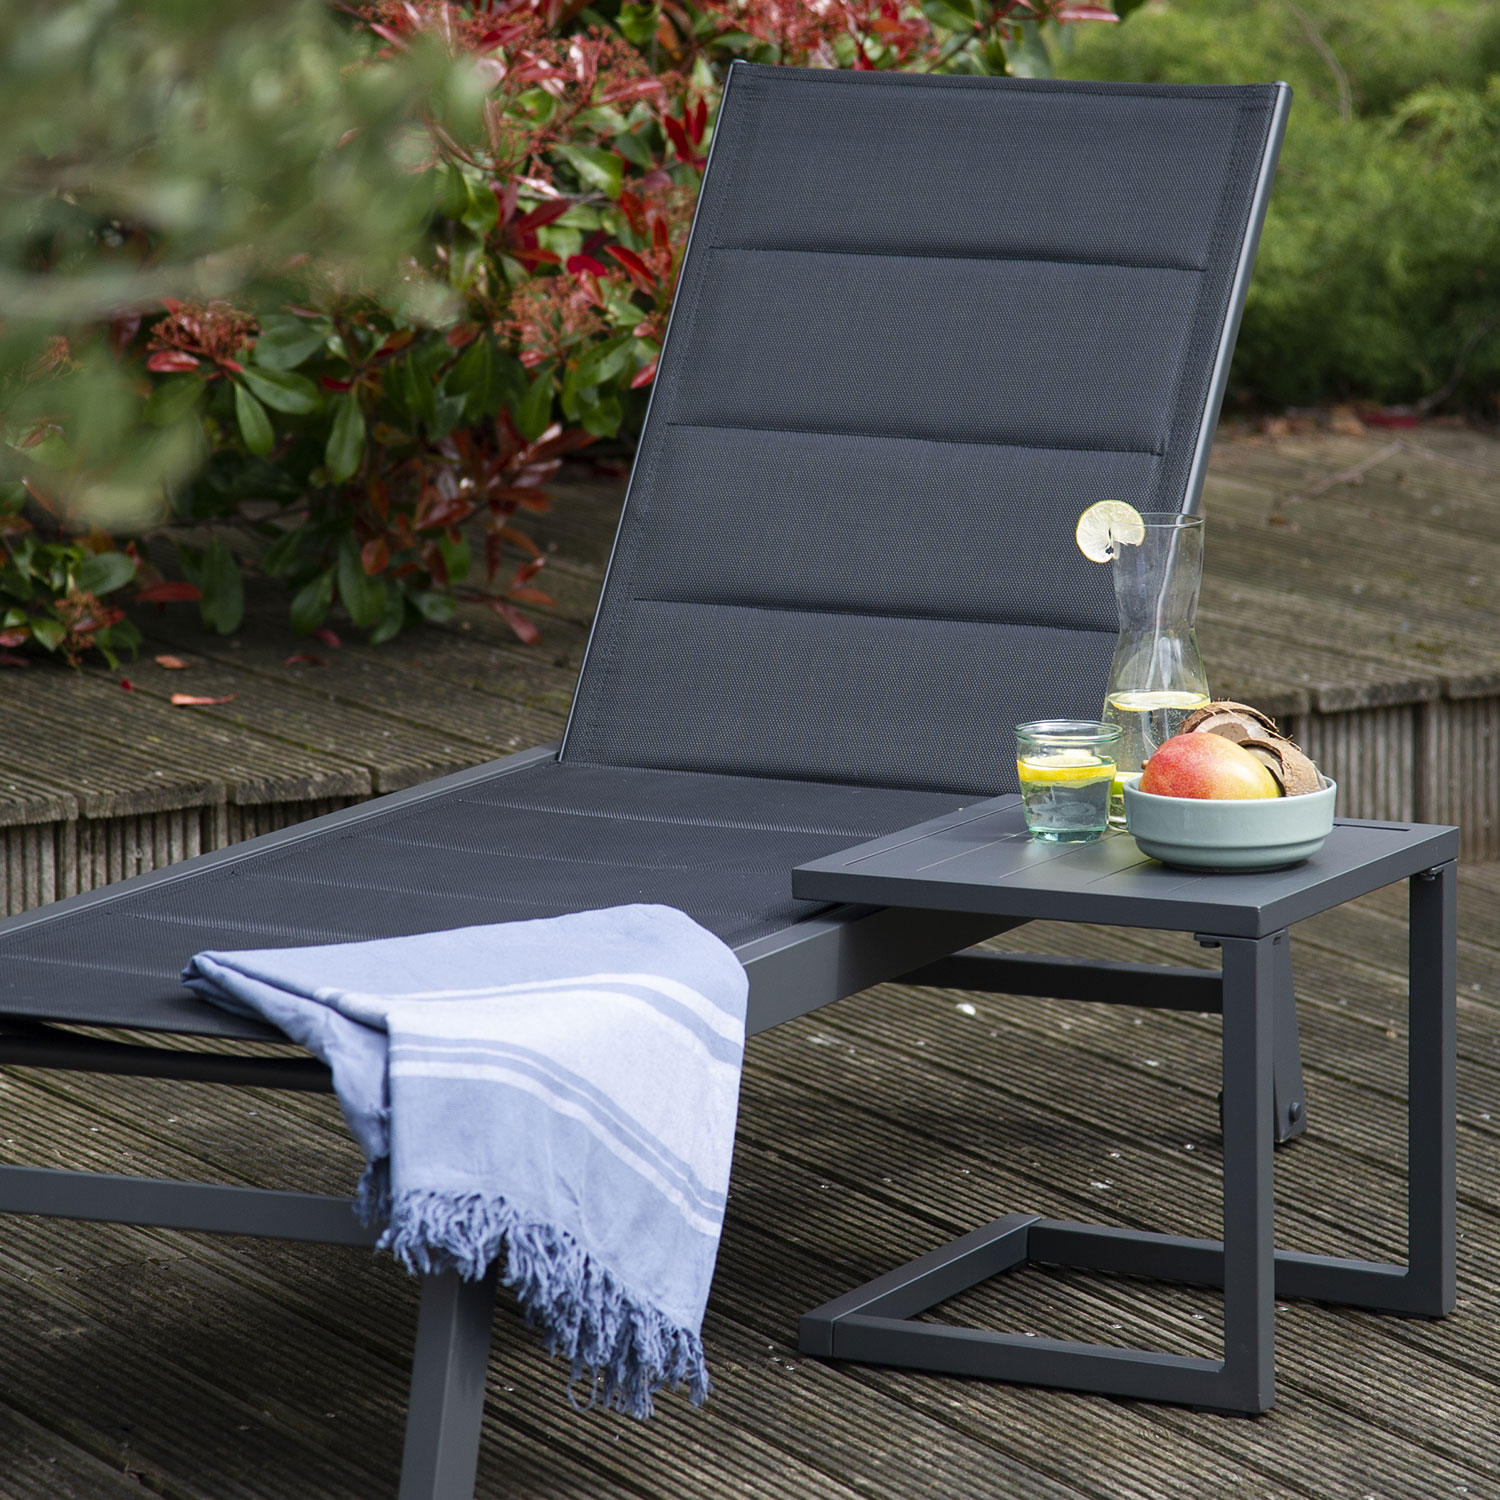 BARBADOS ligstoel en bijzettafel set in zwart textilene - antraciet grijs aluminium